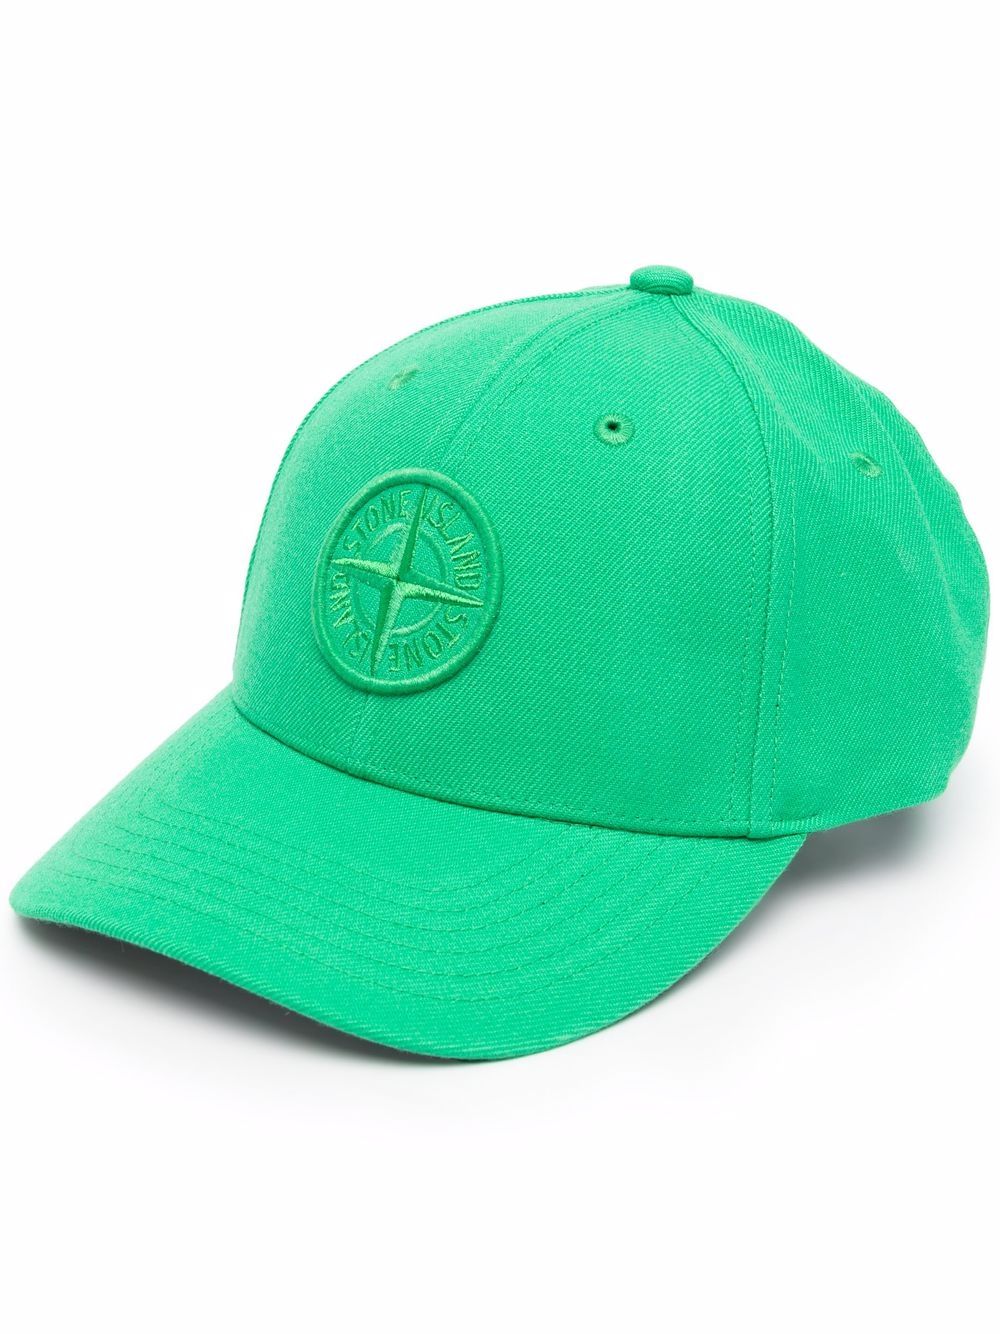 фото Stone island кепка с логотипом compass